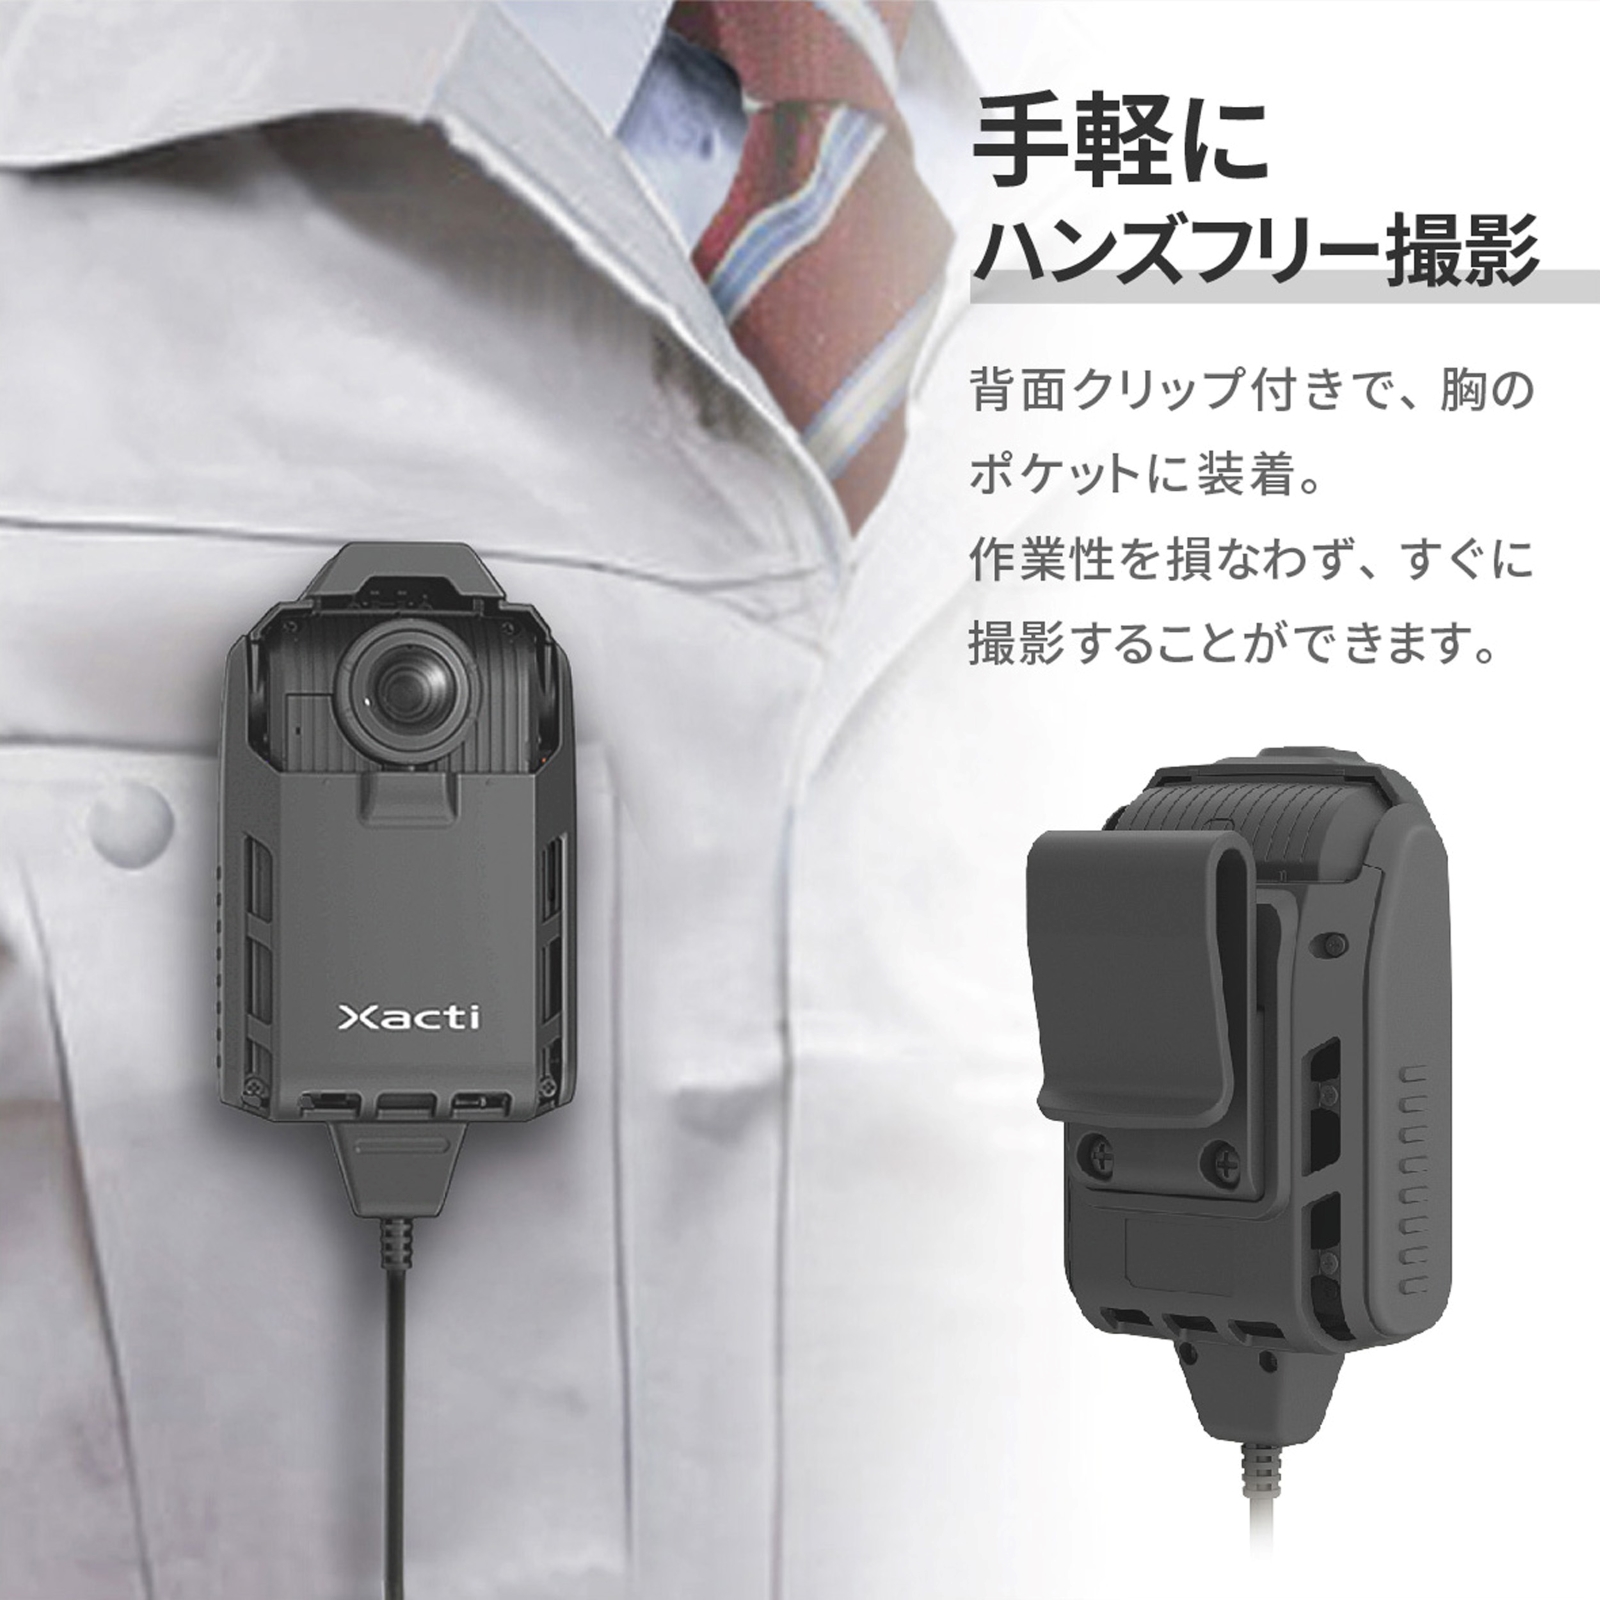 CX-WE300T1 ザクティ Xacti 業務用ウェアラブルカメラ 胸部装着タイプ